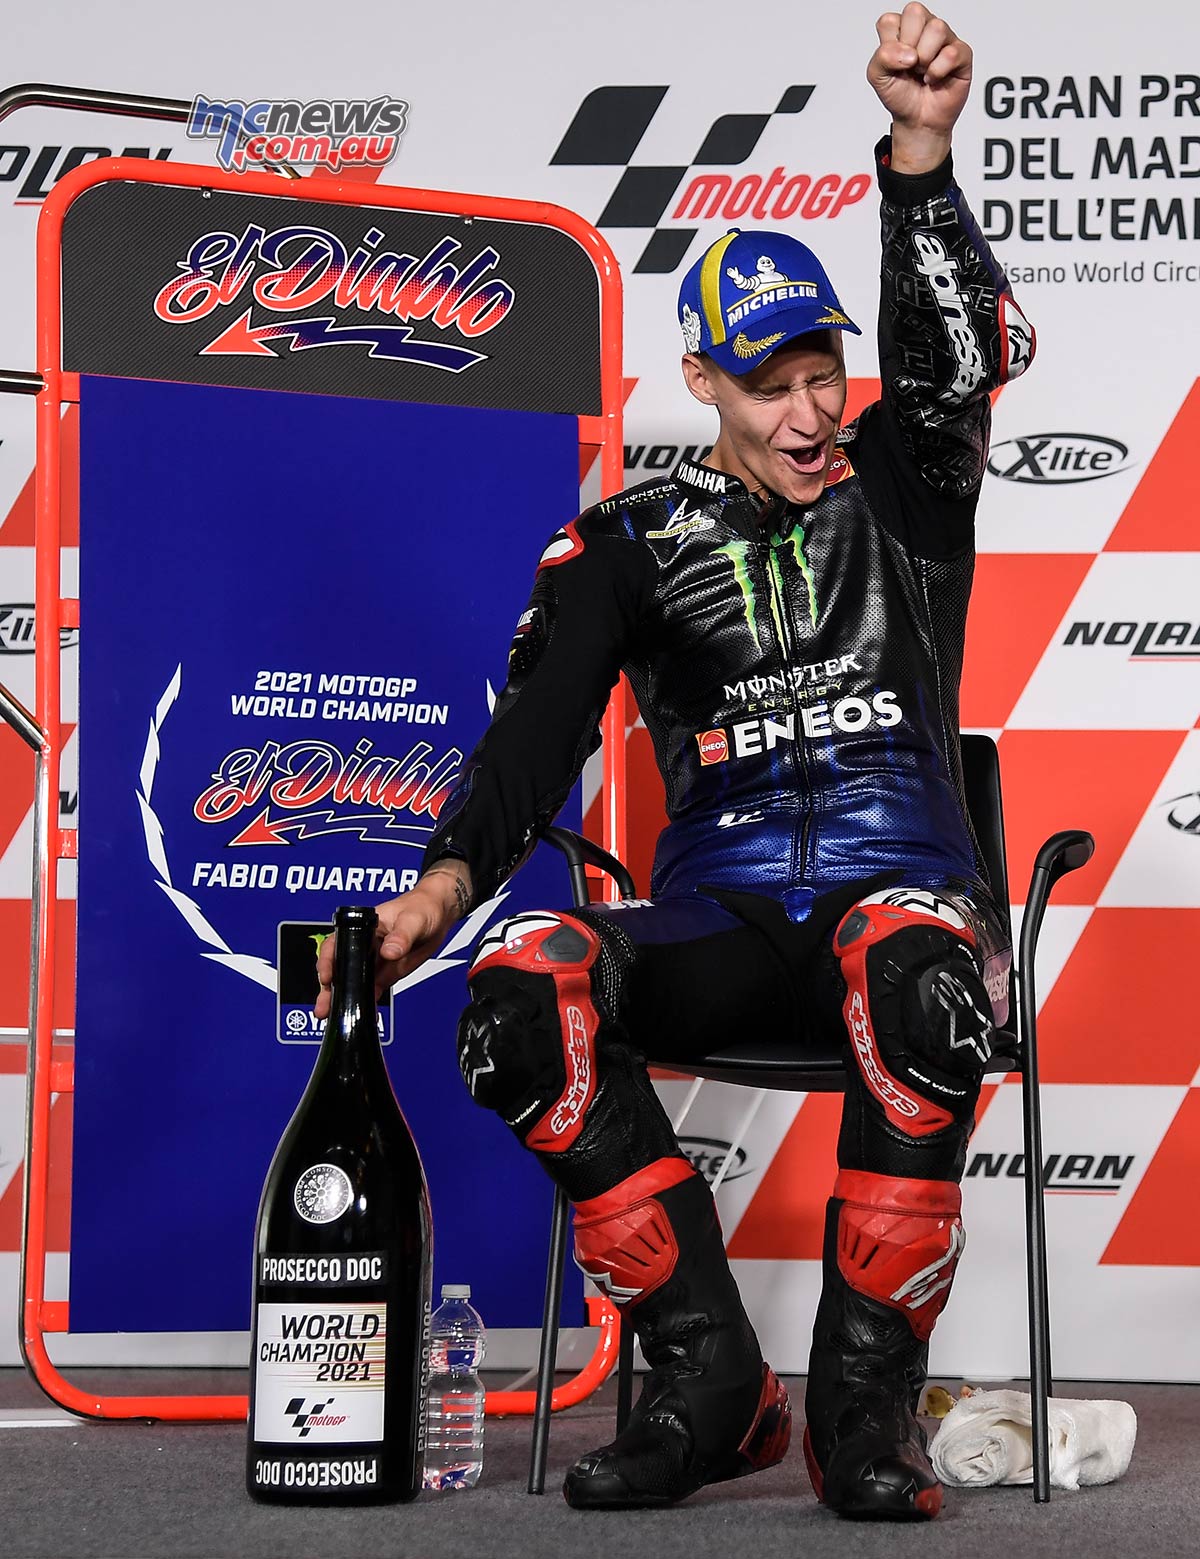 Fabio Quartararo is the 2021 MotoGP World Champion 